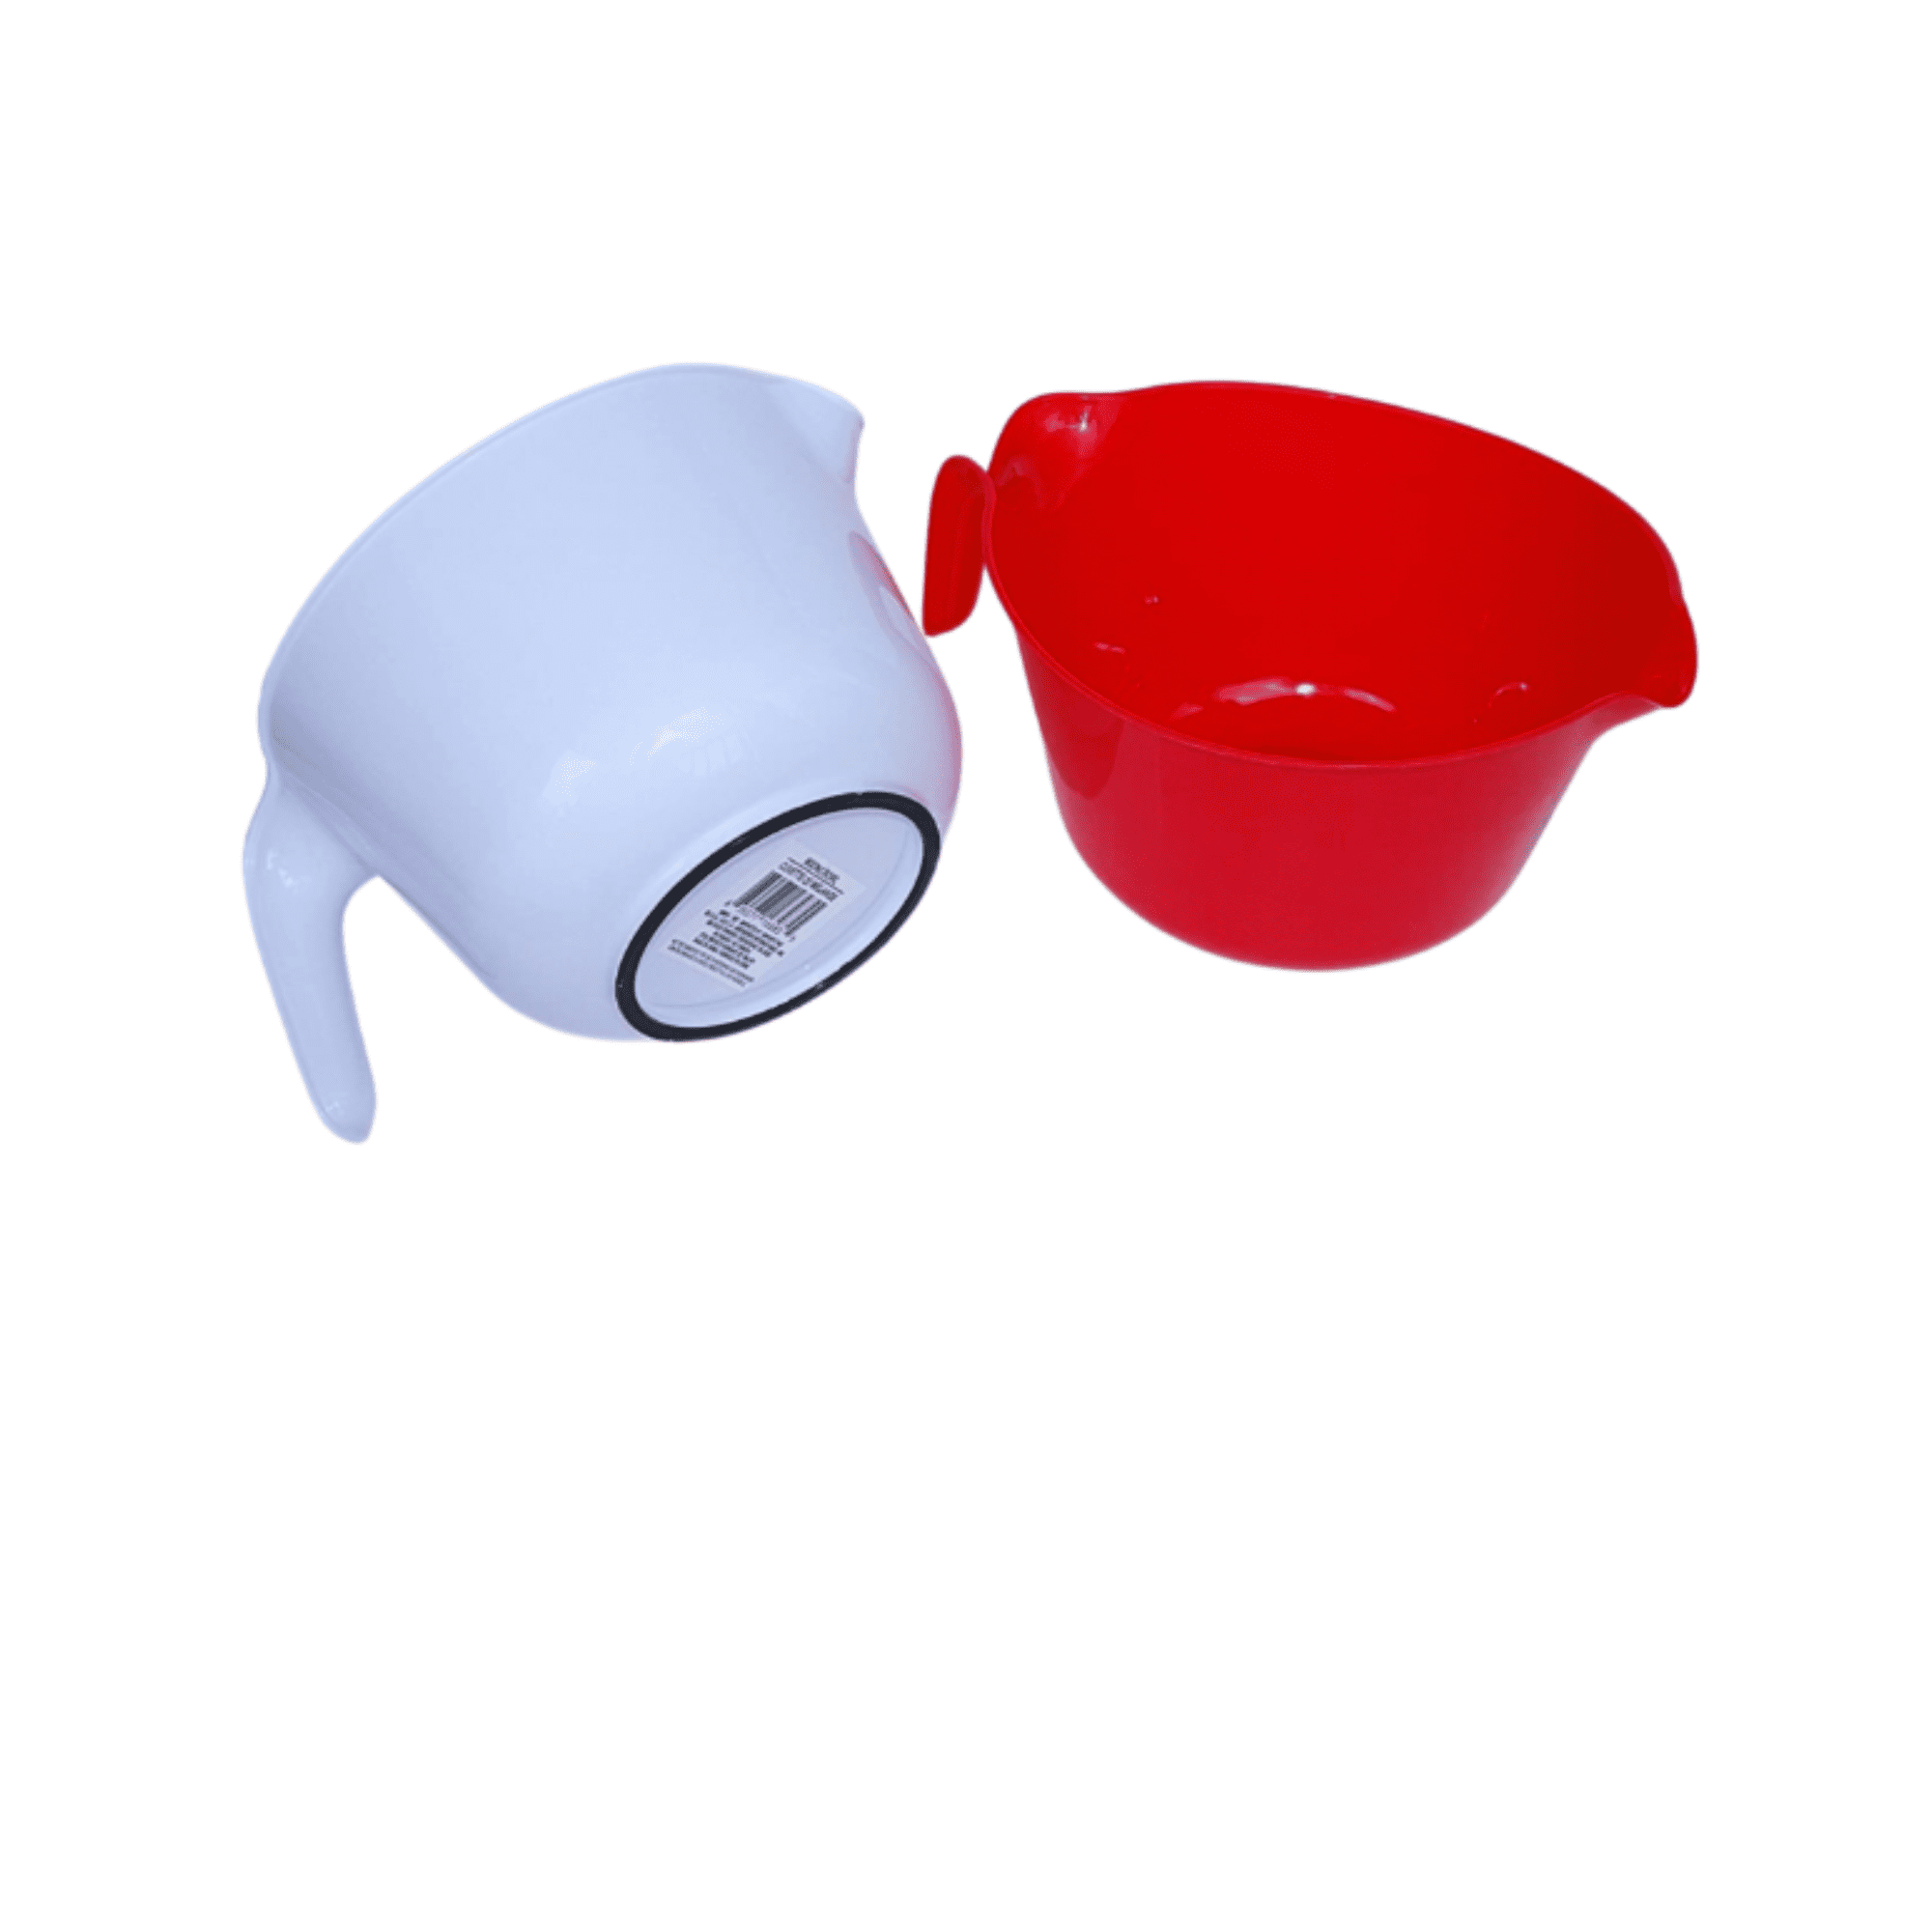 Wholesale Mixing Bowls - 5 Quarts, White, Red, Spout